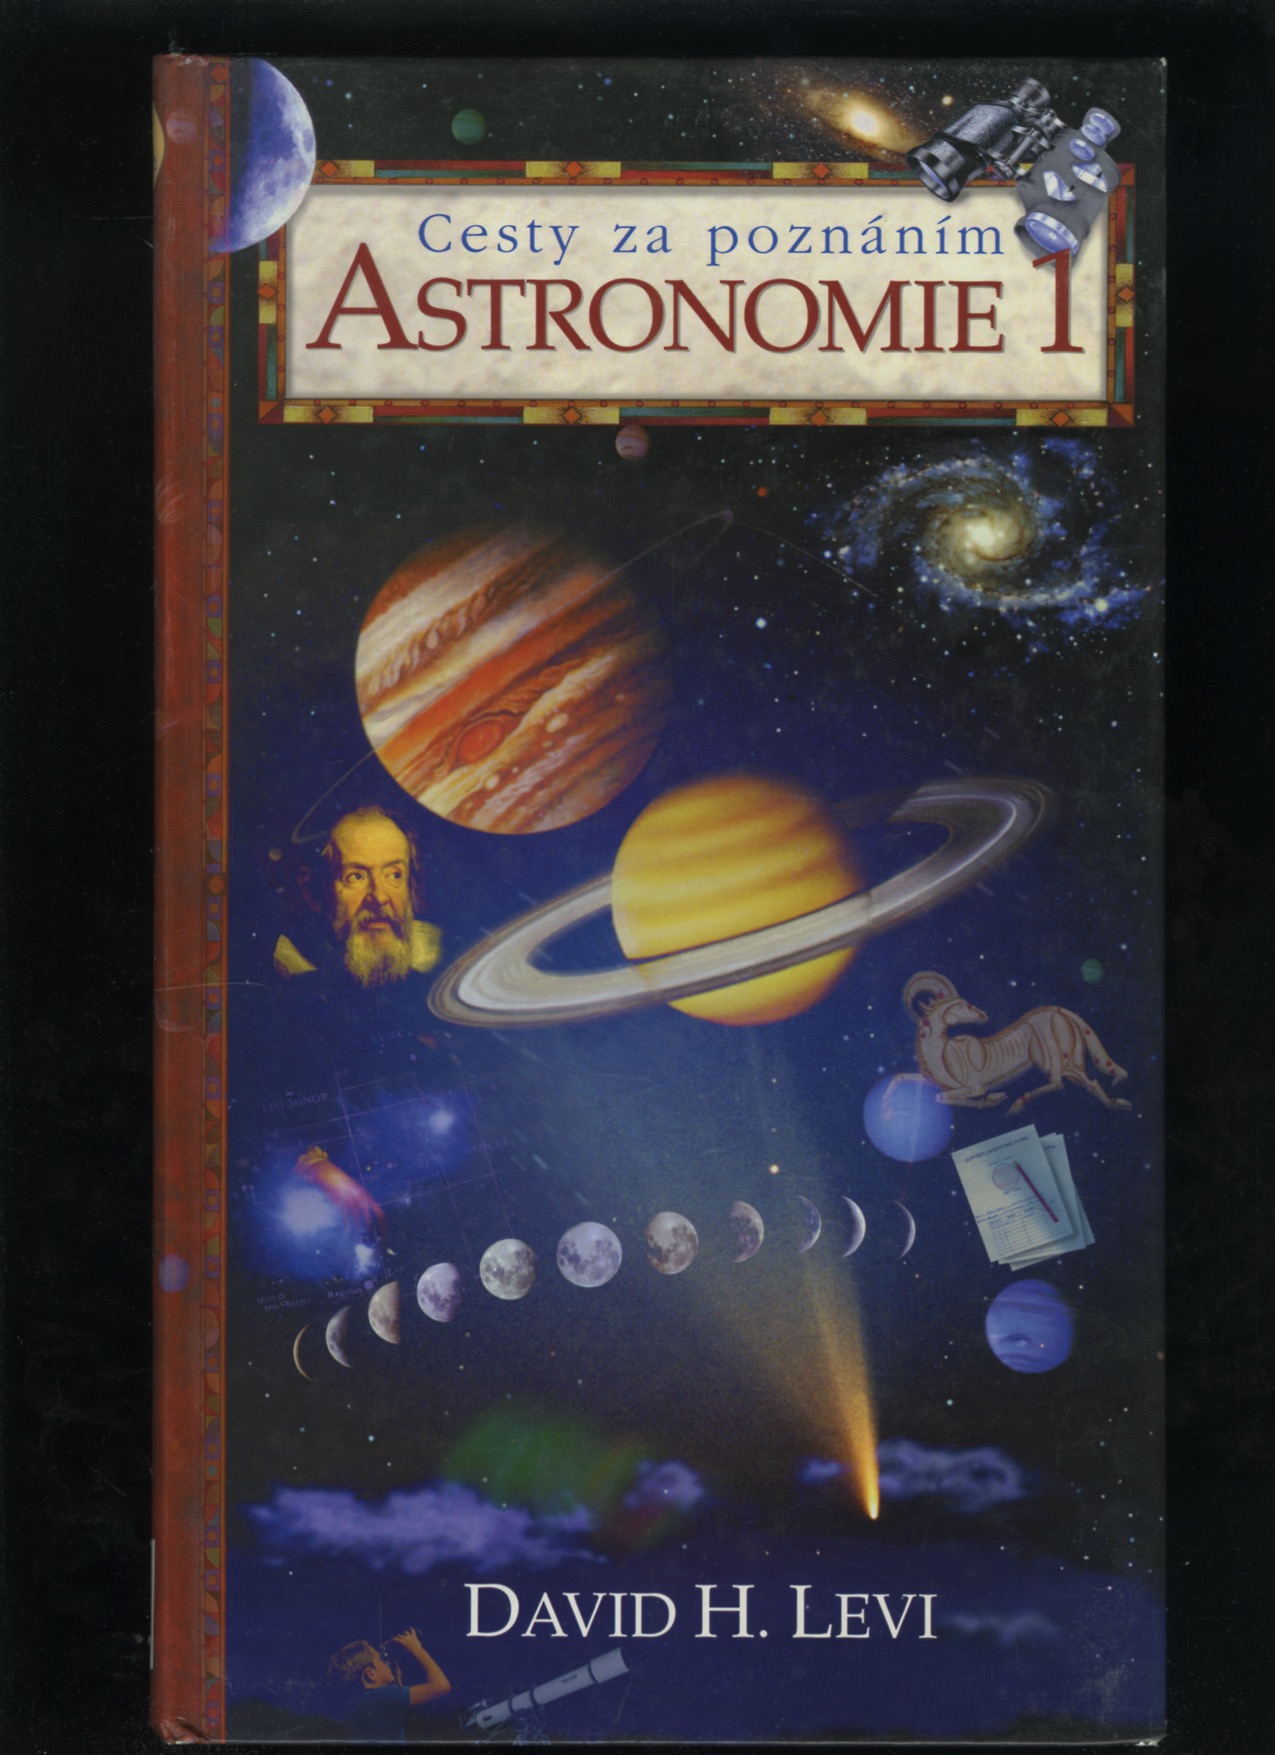 Astronomie 1 (David H. Levy)